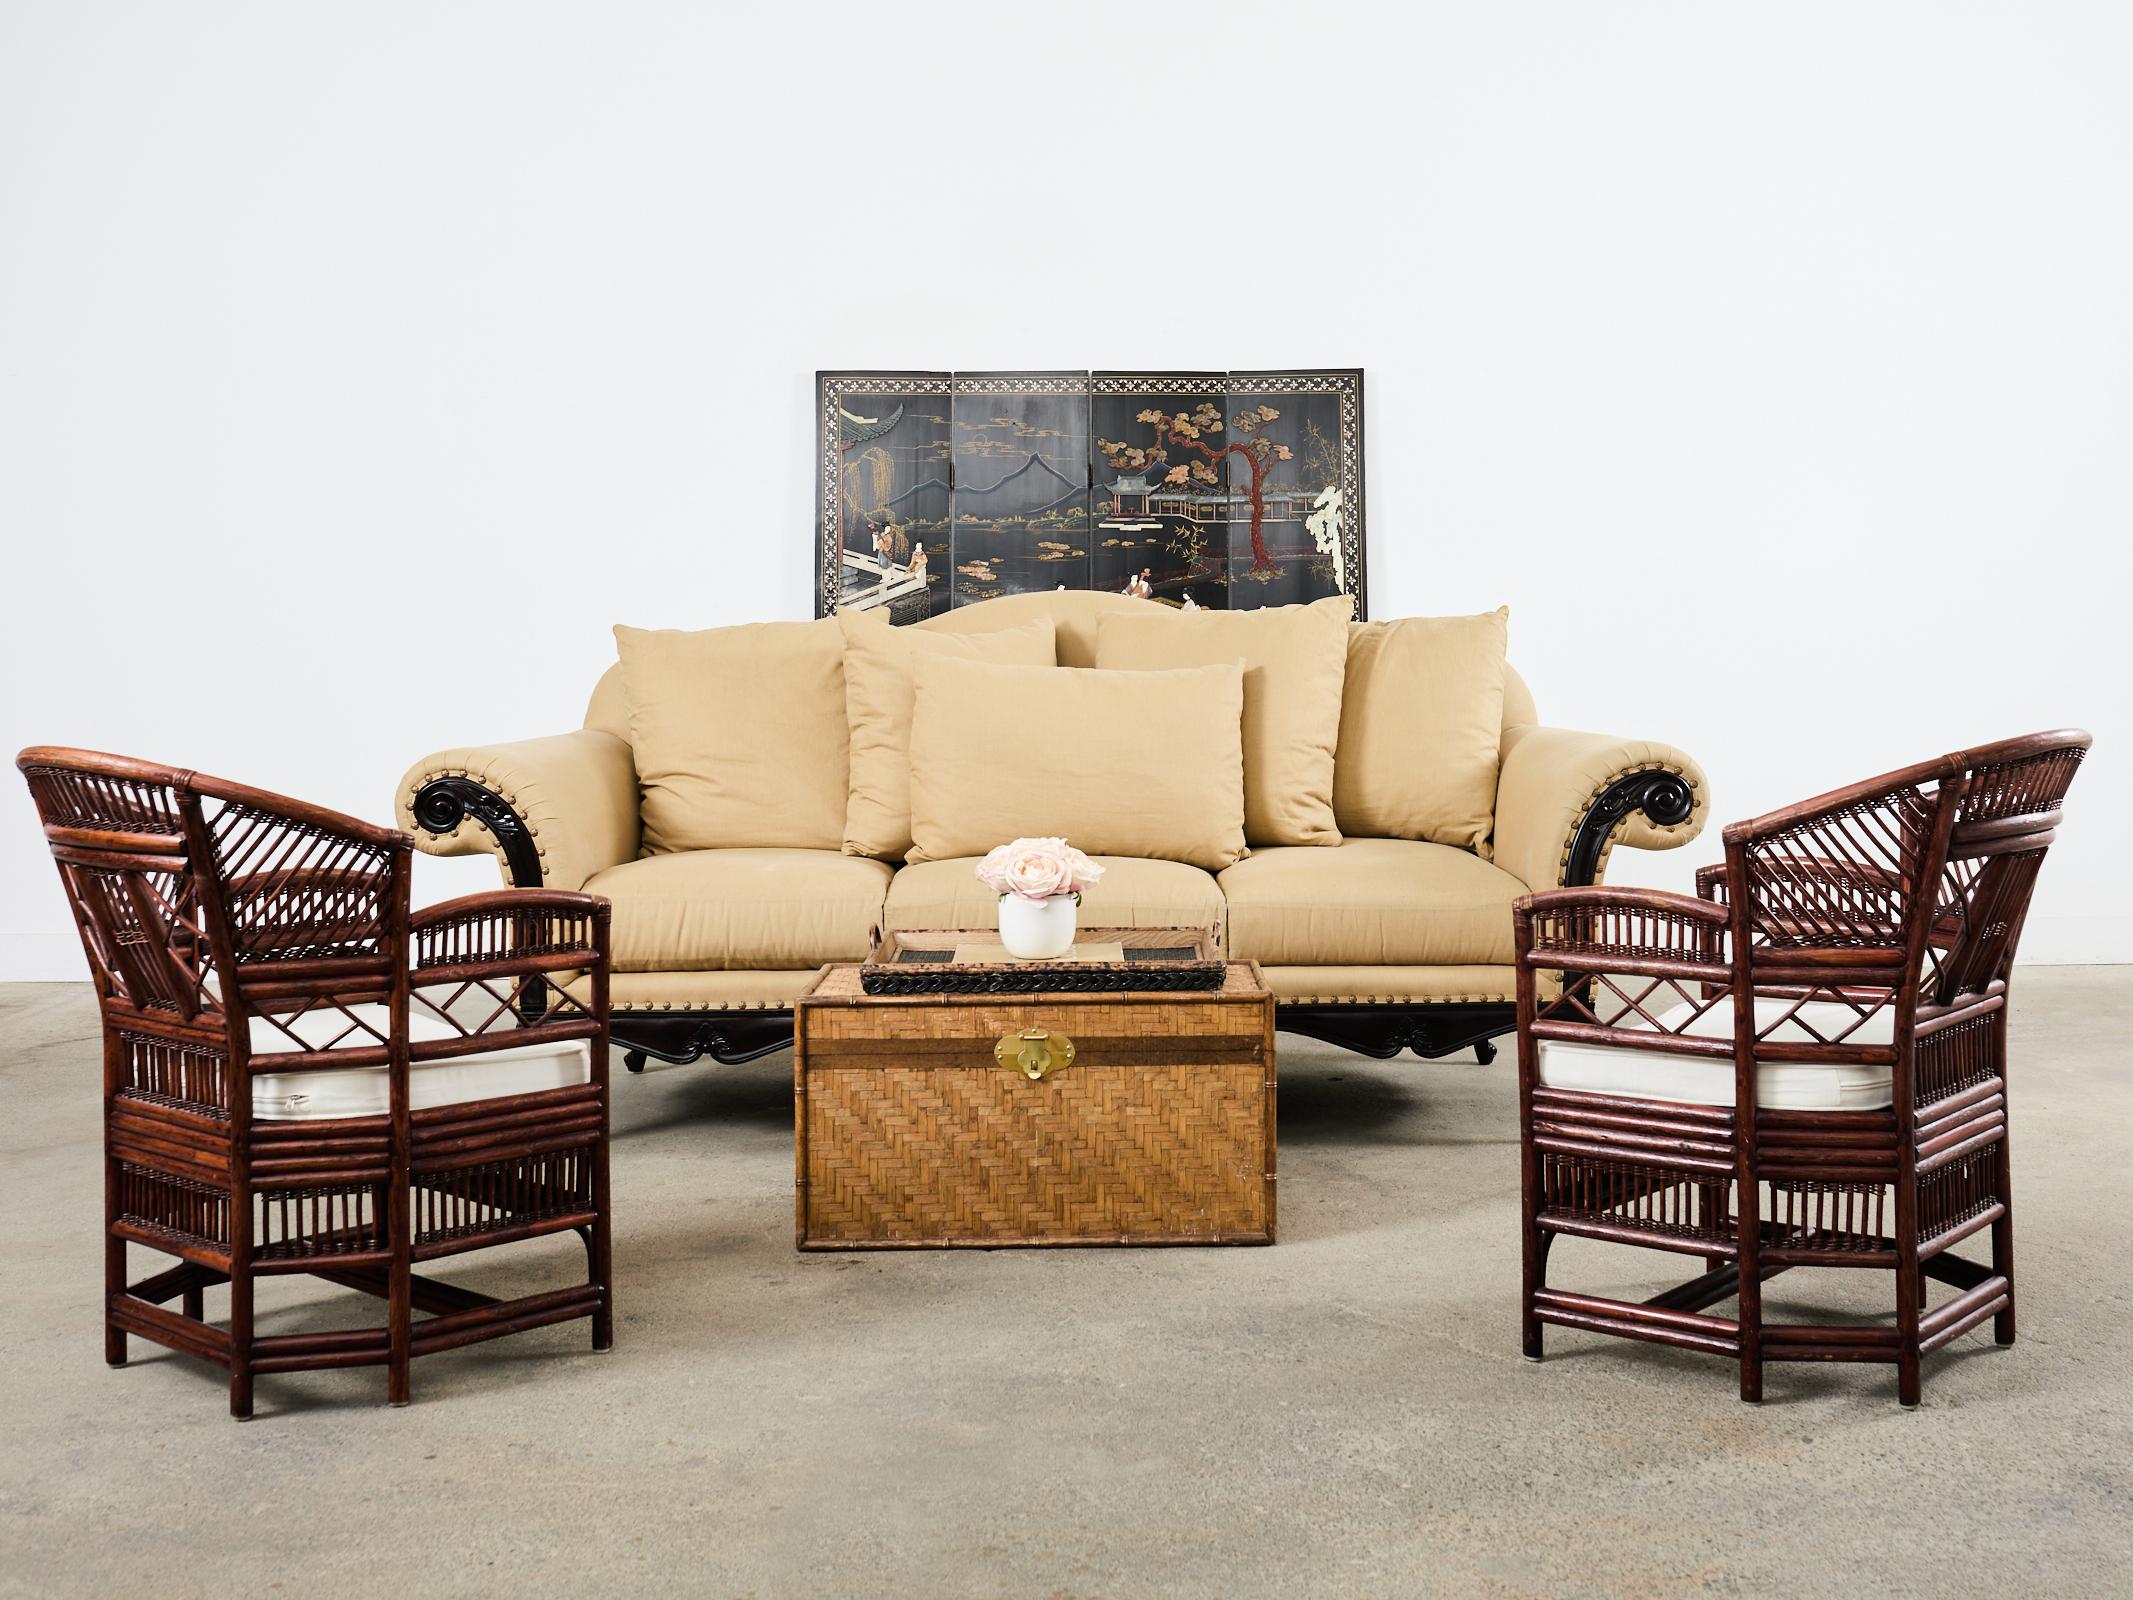 Grand Hartholz geschnitzt St. Germain fertig venezianischen Sofa entworfen von Ralph Lauren. Dieses imposante Sofa ist über 8,5 Fuß lang und verfügt über einen Buckelrahmen mit großen gerollten Armen. Das Gestell aus Hartholz ist in St. Germain